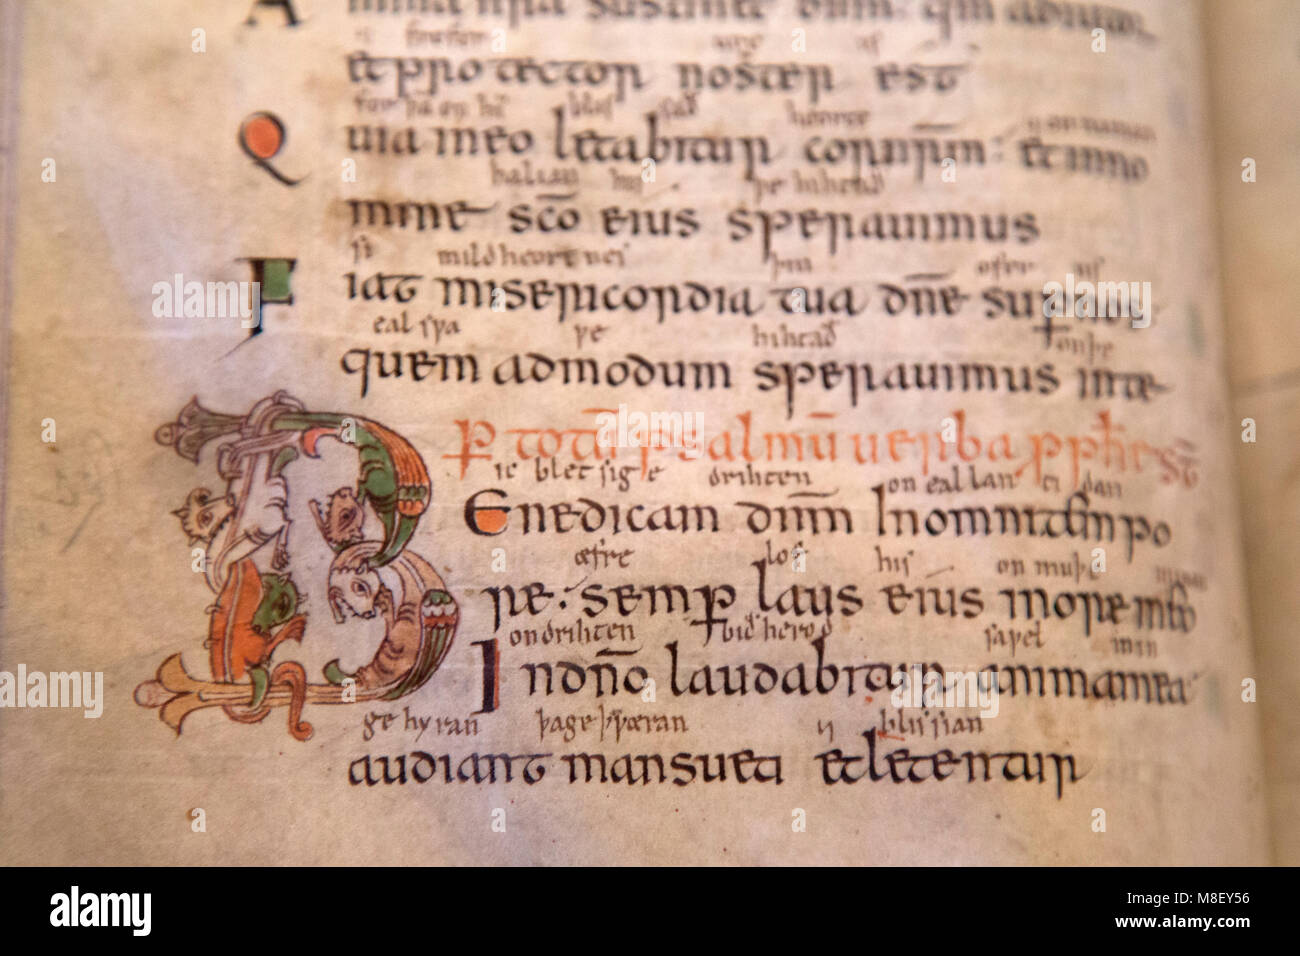 Mittelalterliche Handschrift in der Bibliothek der Kathedrale von Salisbury, Wiltshire, England. Das Buch stammt aus dem 10. Jahrhundert. Stockfoto